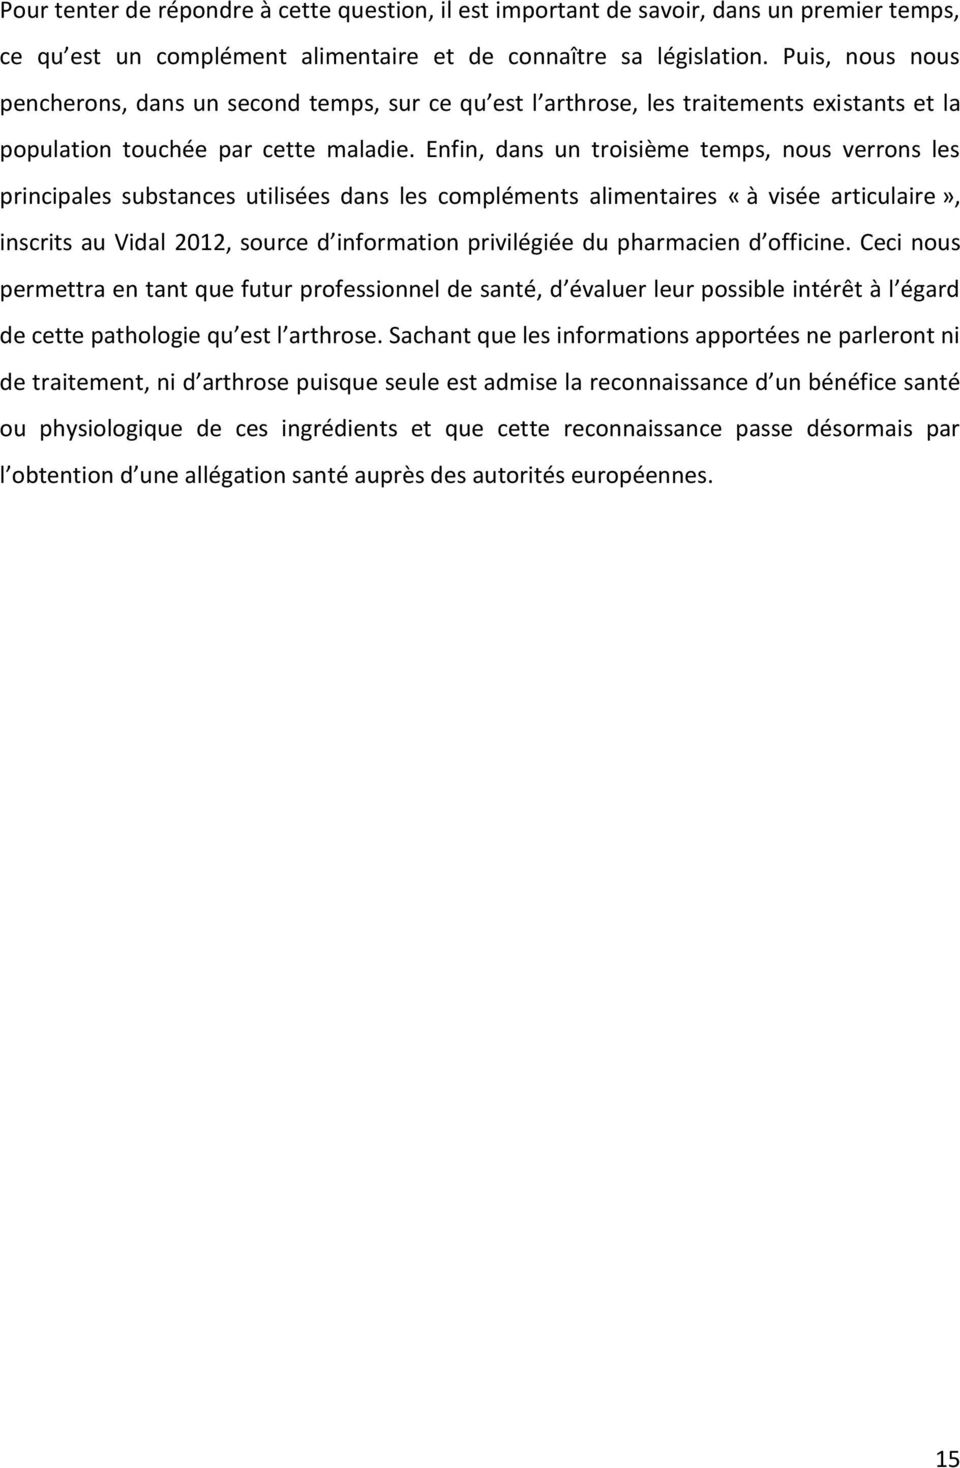 Enfin, dans un troisième temps, nous verrons les principales substances utilisées dans les compléments alimentaires «à visée articulaire», inscrits au Vidal 2012, source d information privilégiée du